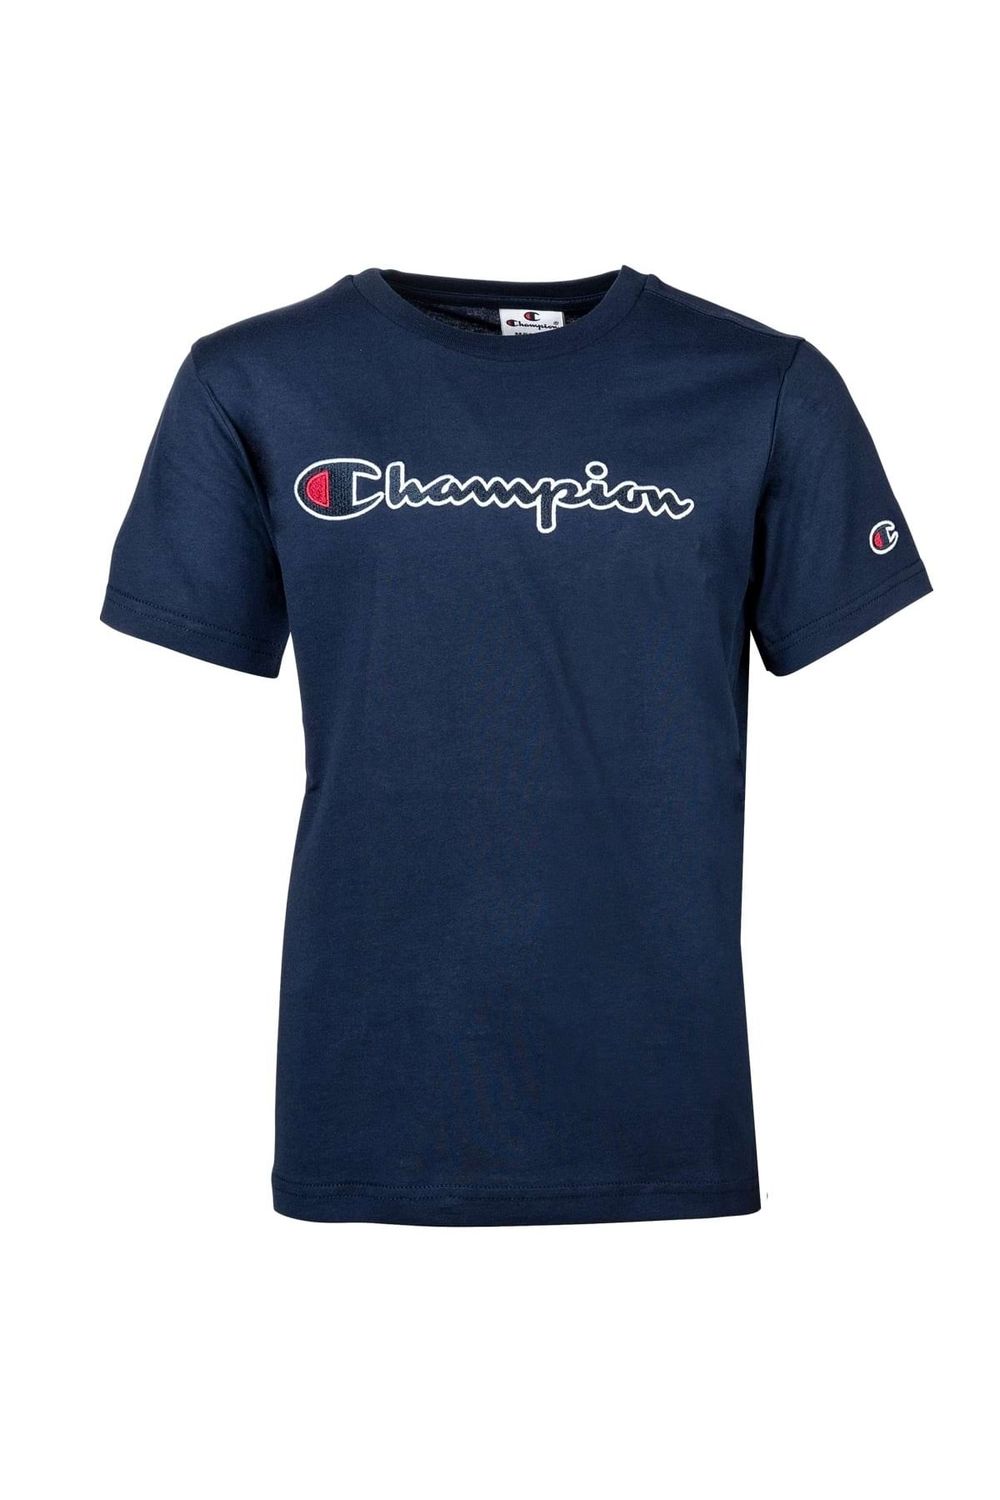 Champion Kinder Unisex T-Shirt - Baumwolle, Trendyol Rundhals, großes Crewneck, Logo, einfarbig 